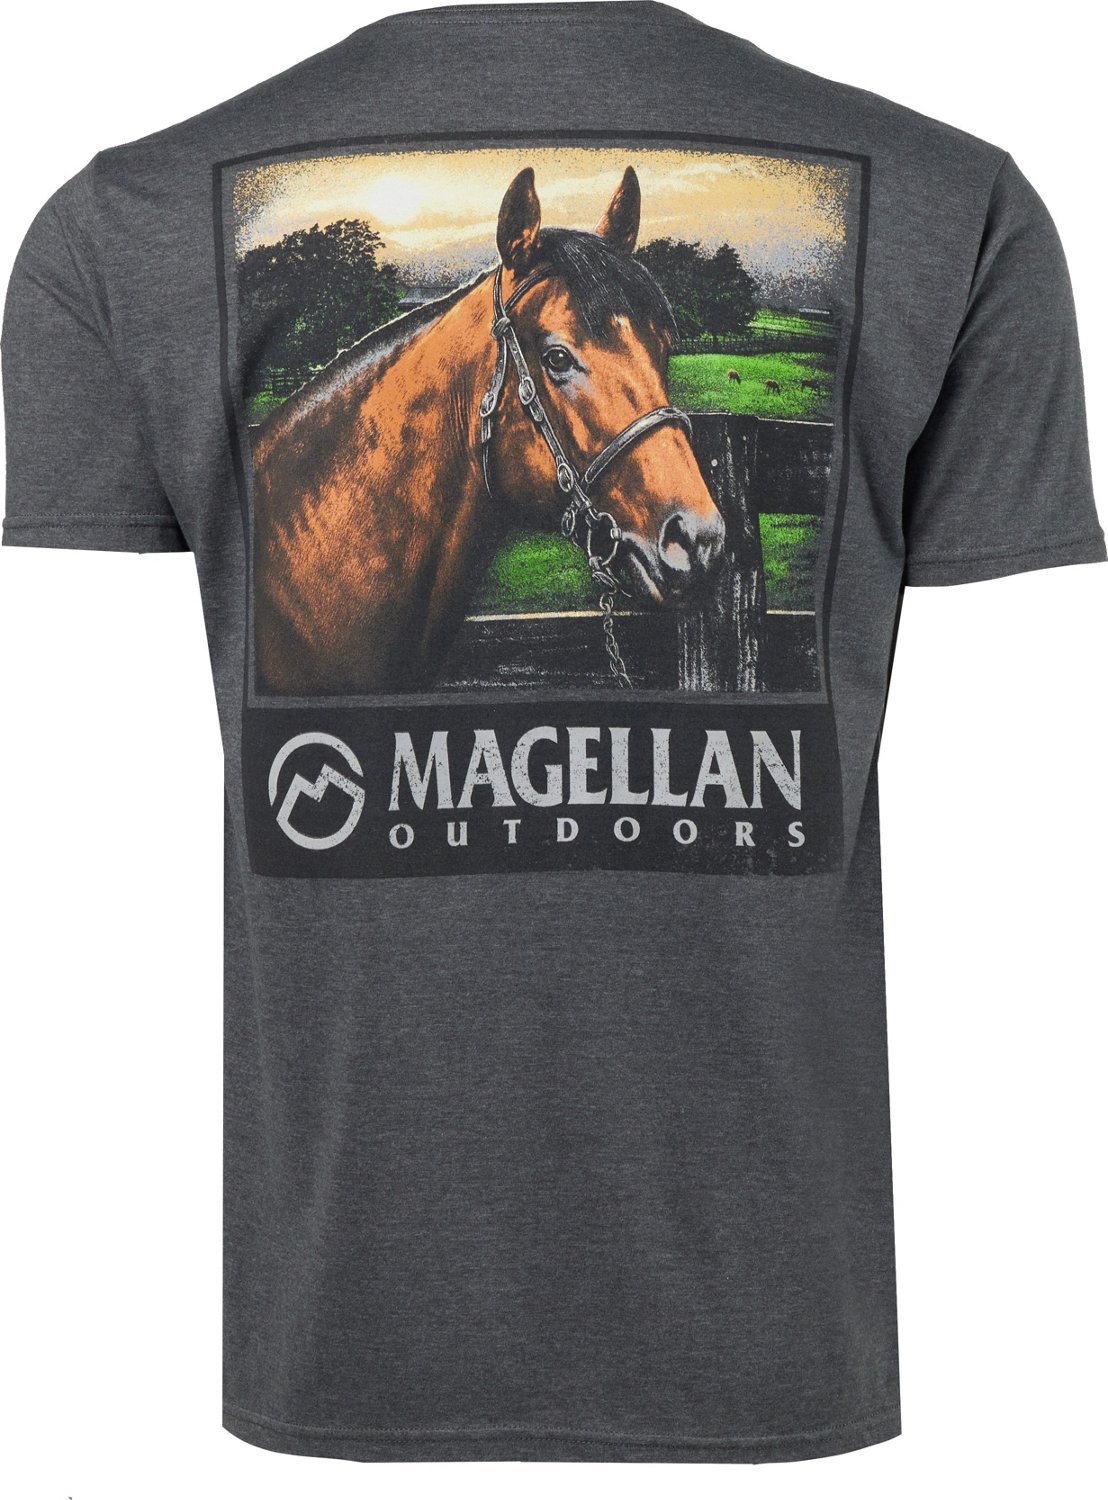 Magellan Outdoors Men's Thoroughbred Graphic T-shirt